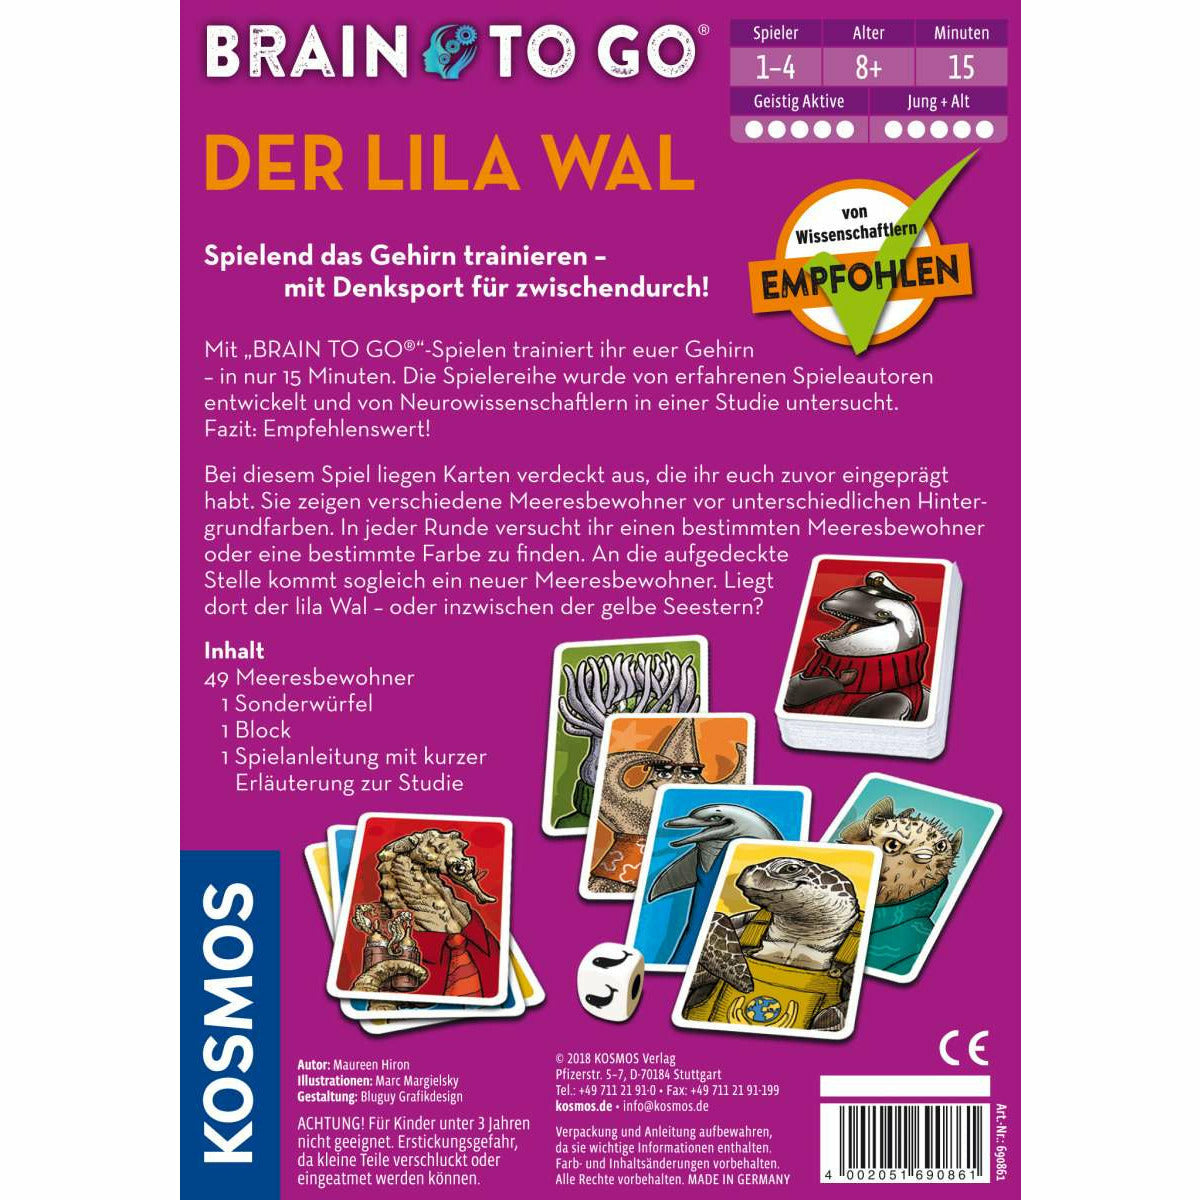 Brain to go - Der lila Wal